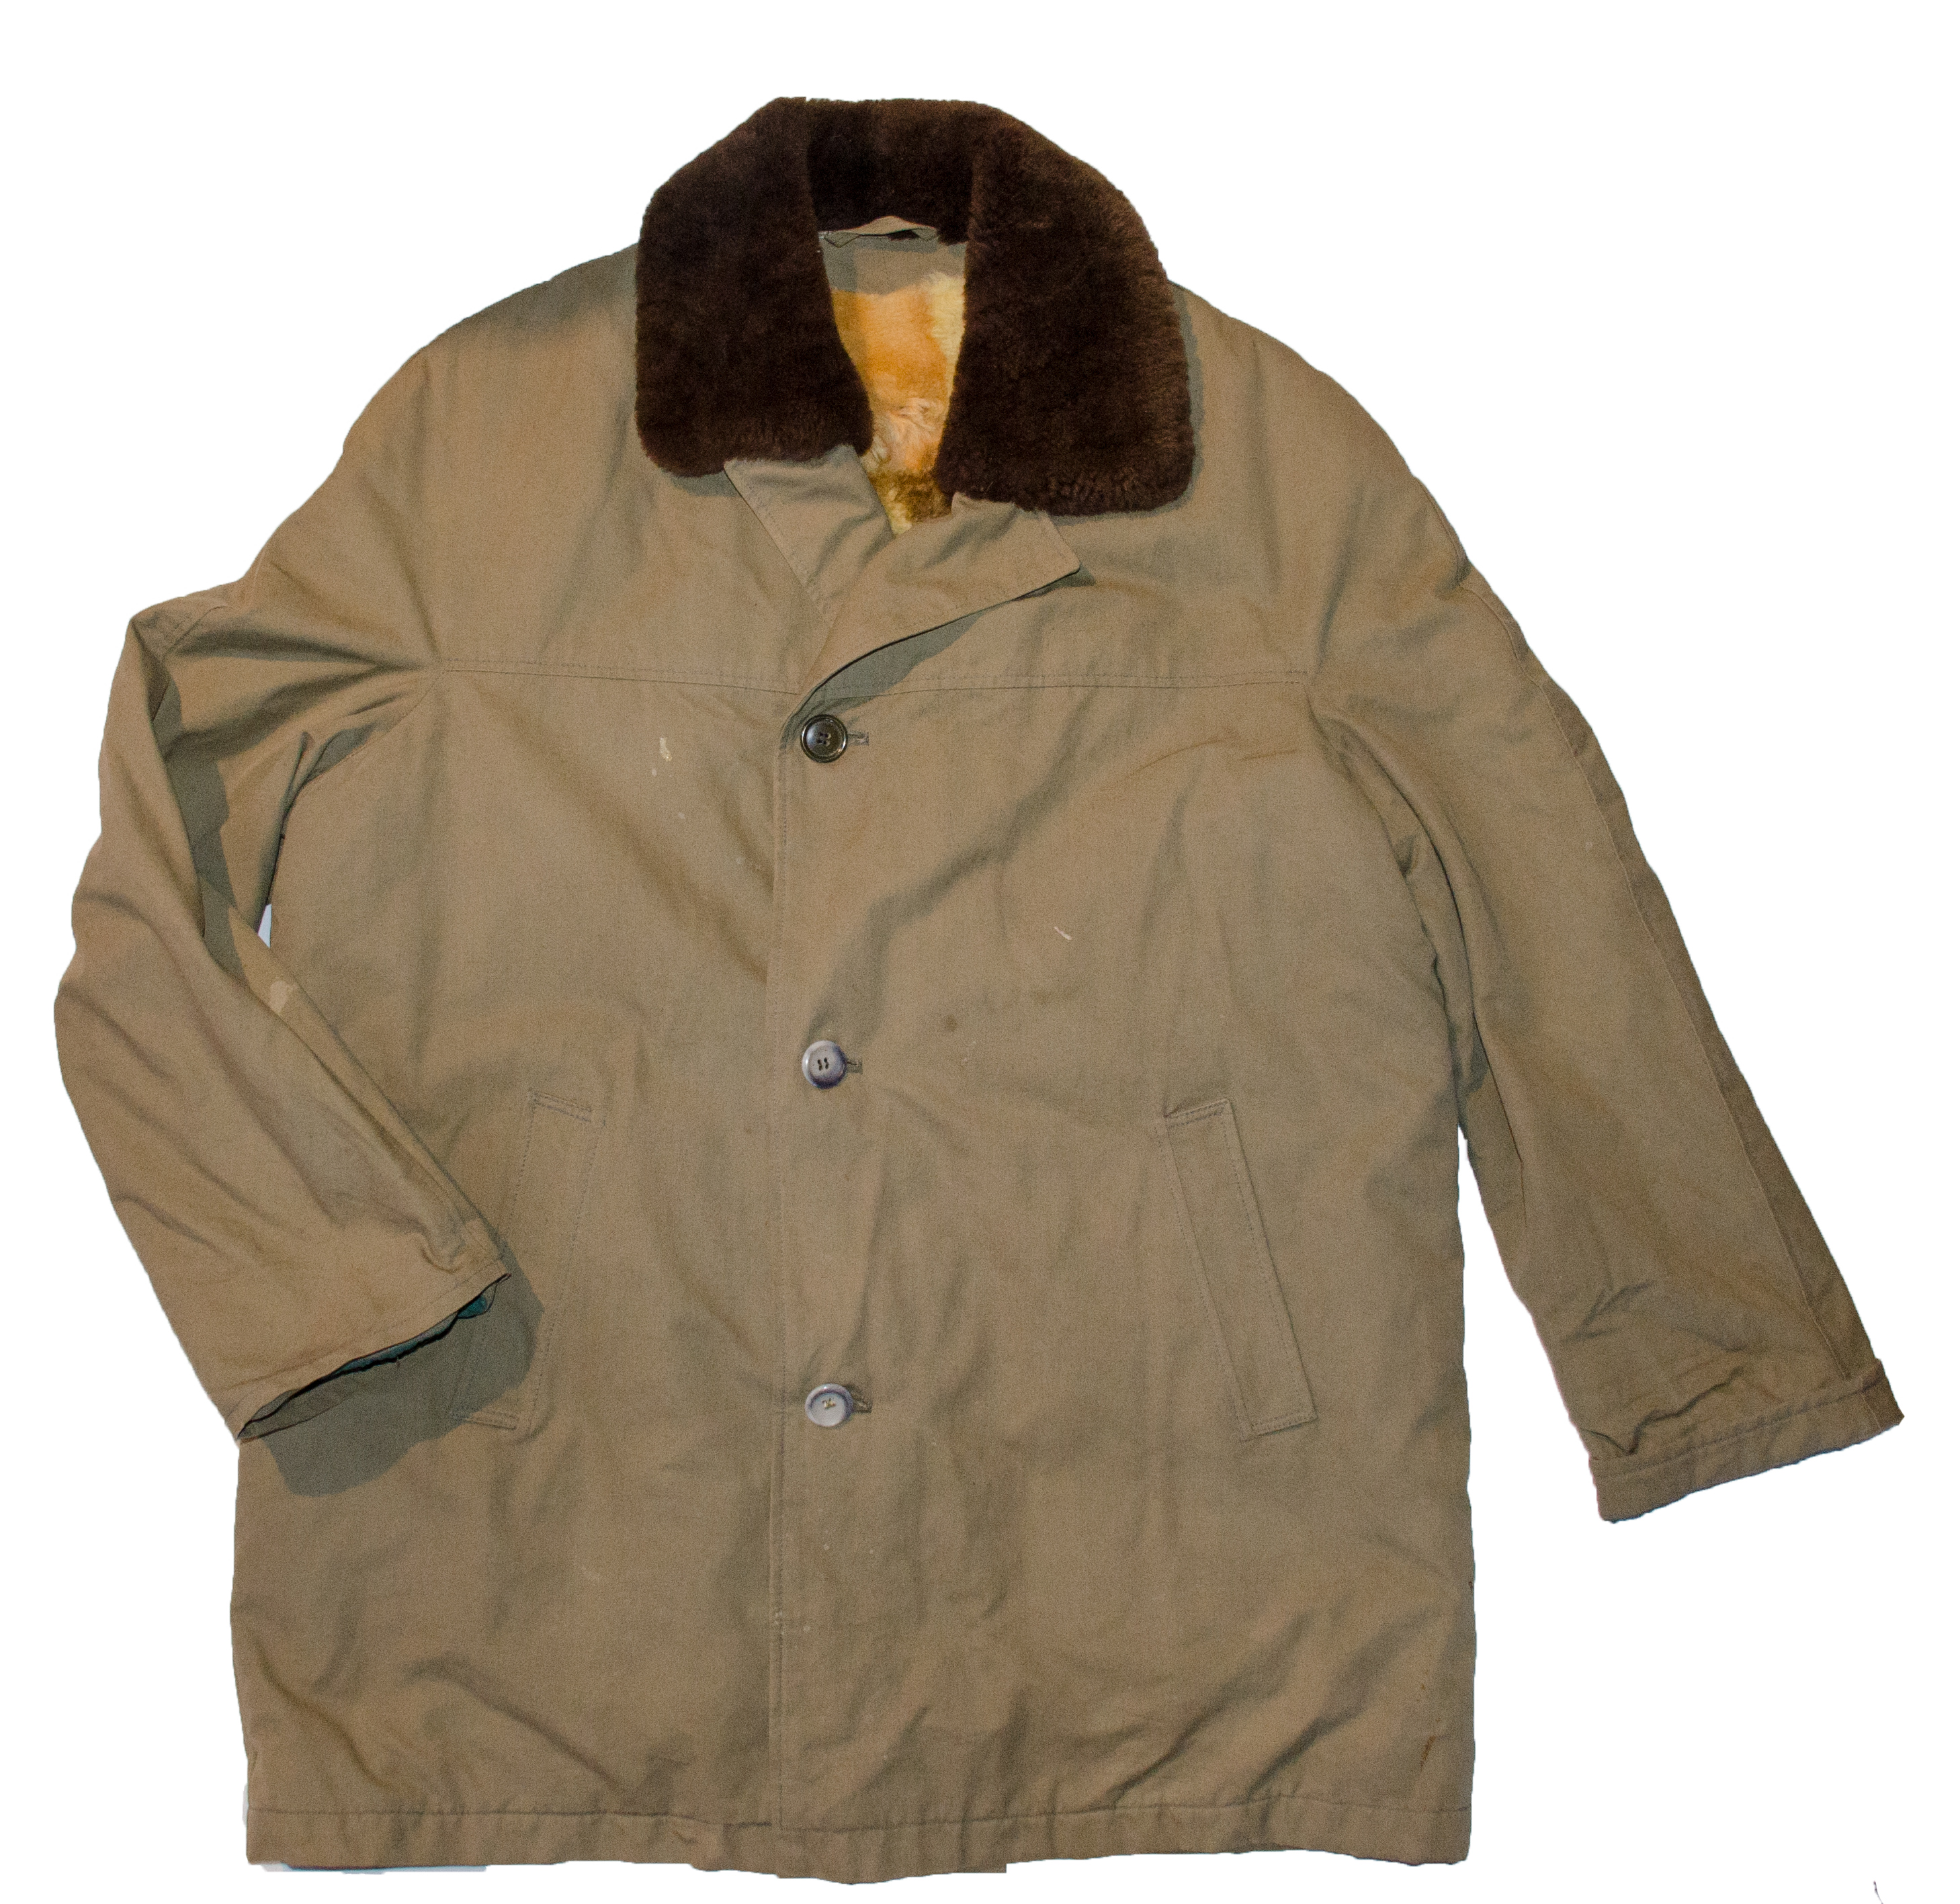 Kabát s kožichem (2) Použitý